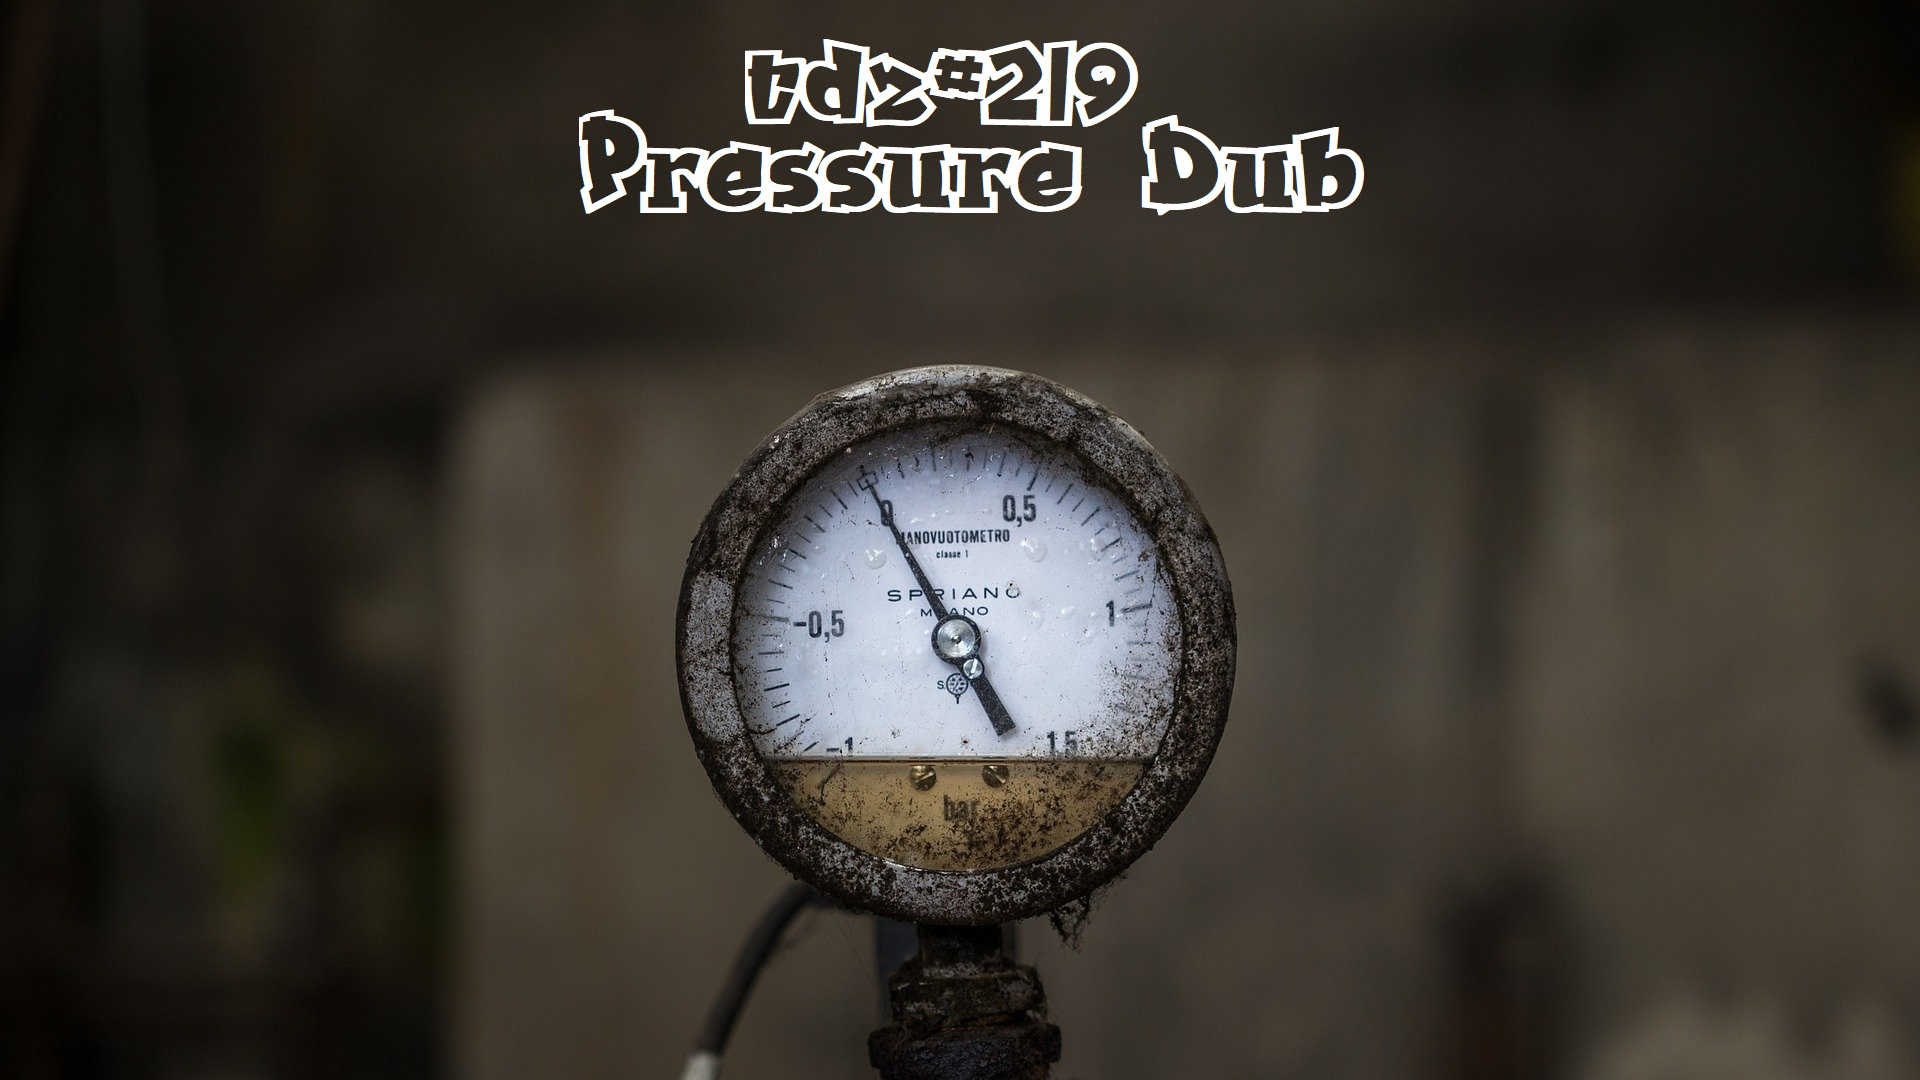 TDZ#219… Pressure Dub…..